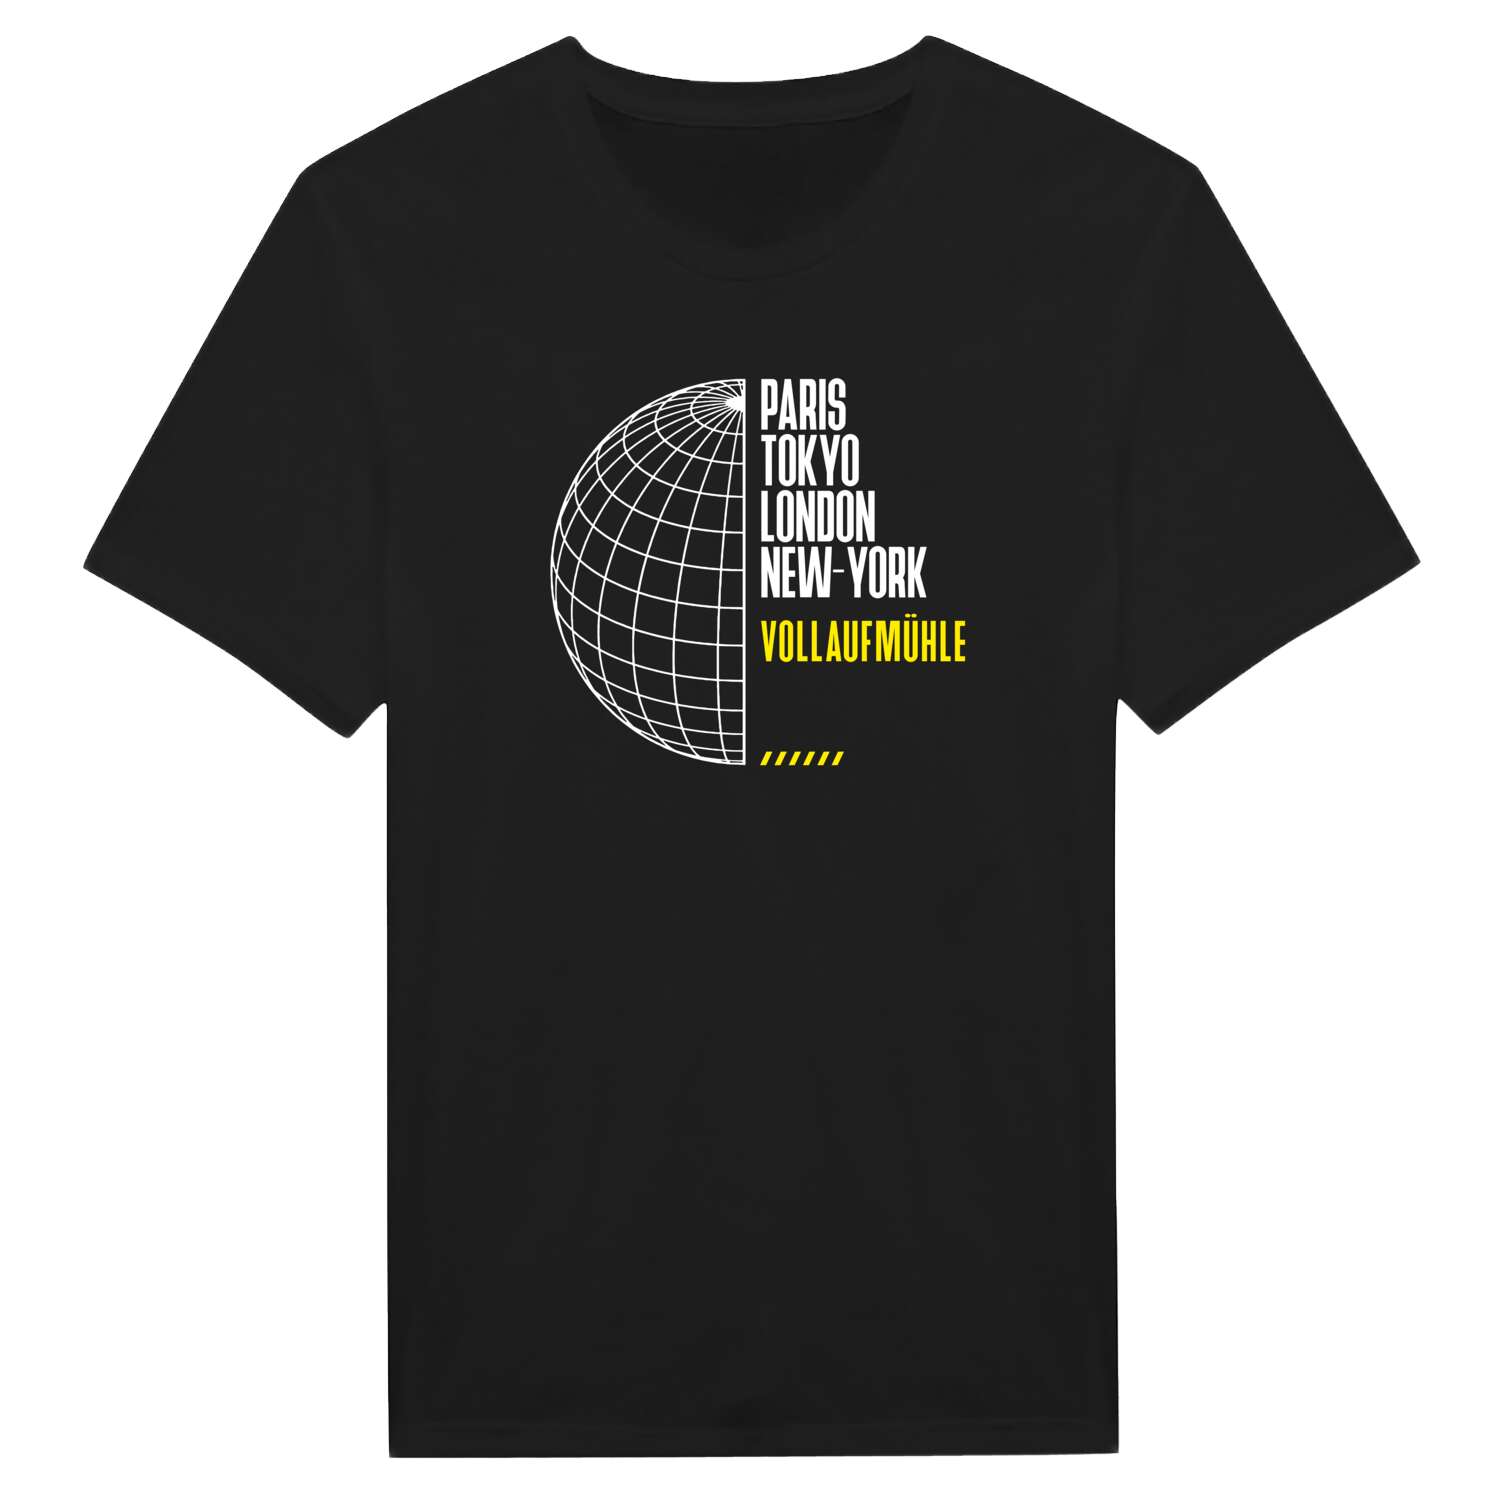 Vollaufmühle T-Shirt »Paris Tokyo London«